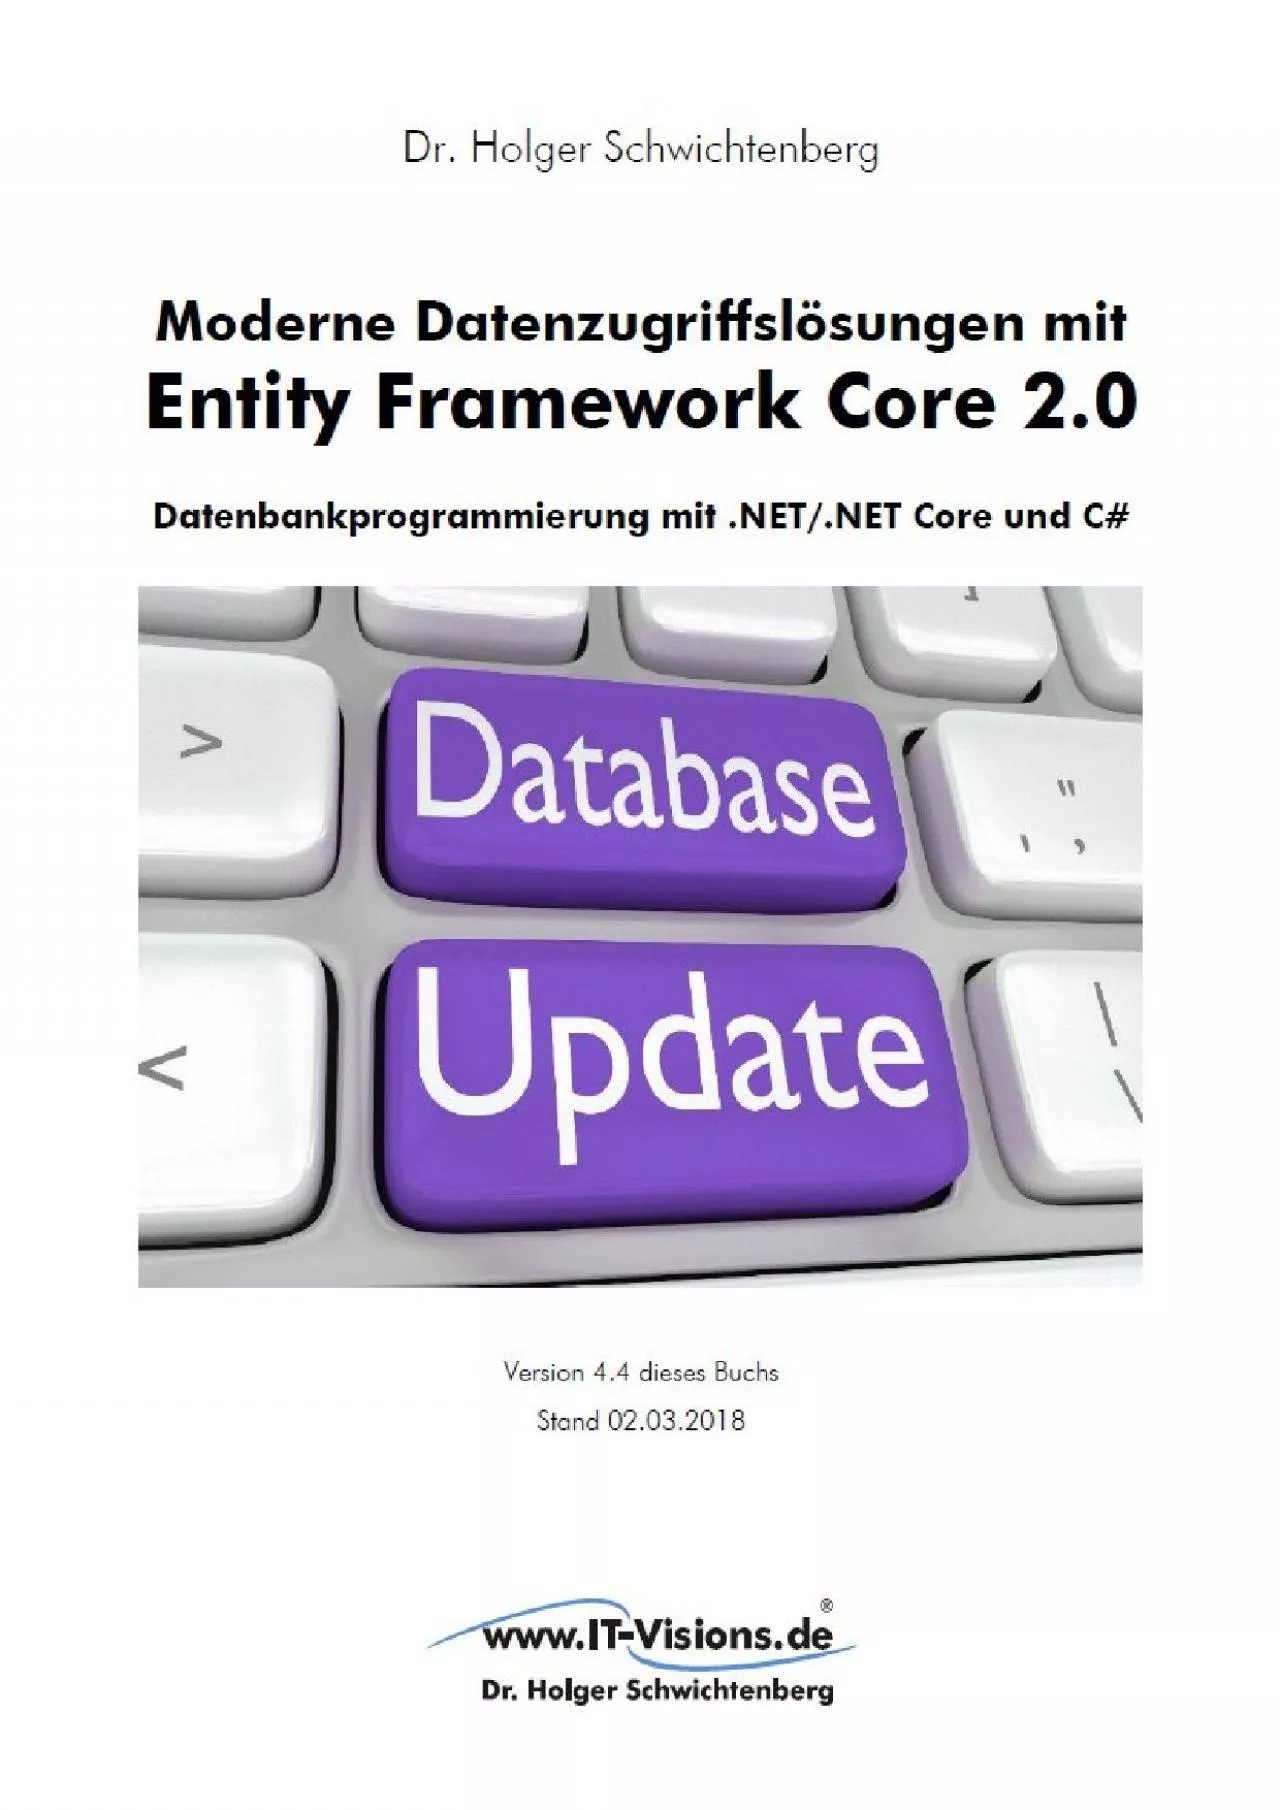 [PDF]-Moderne Datenzugriffslösungen mit Entity Framework Core 2.0: Datenbankprogrammierung